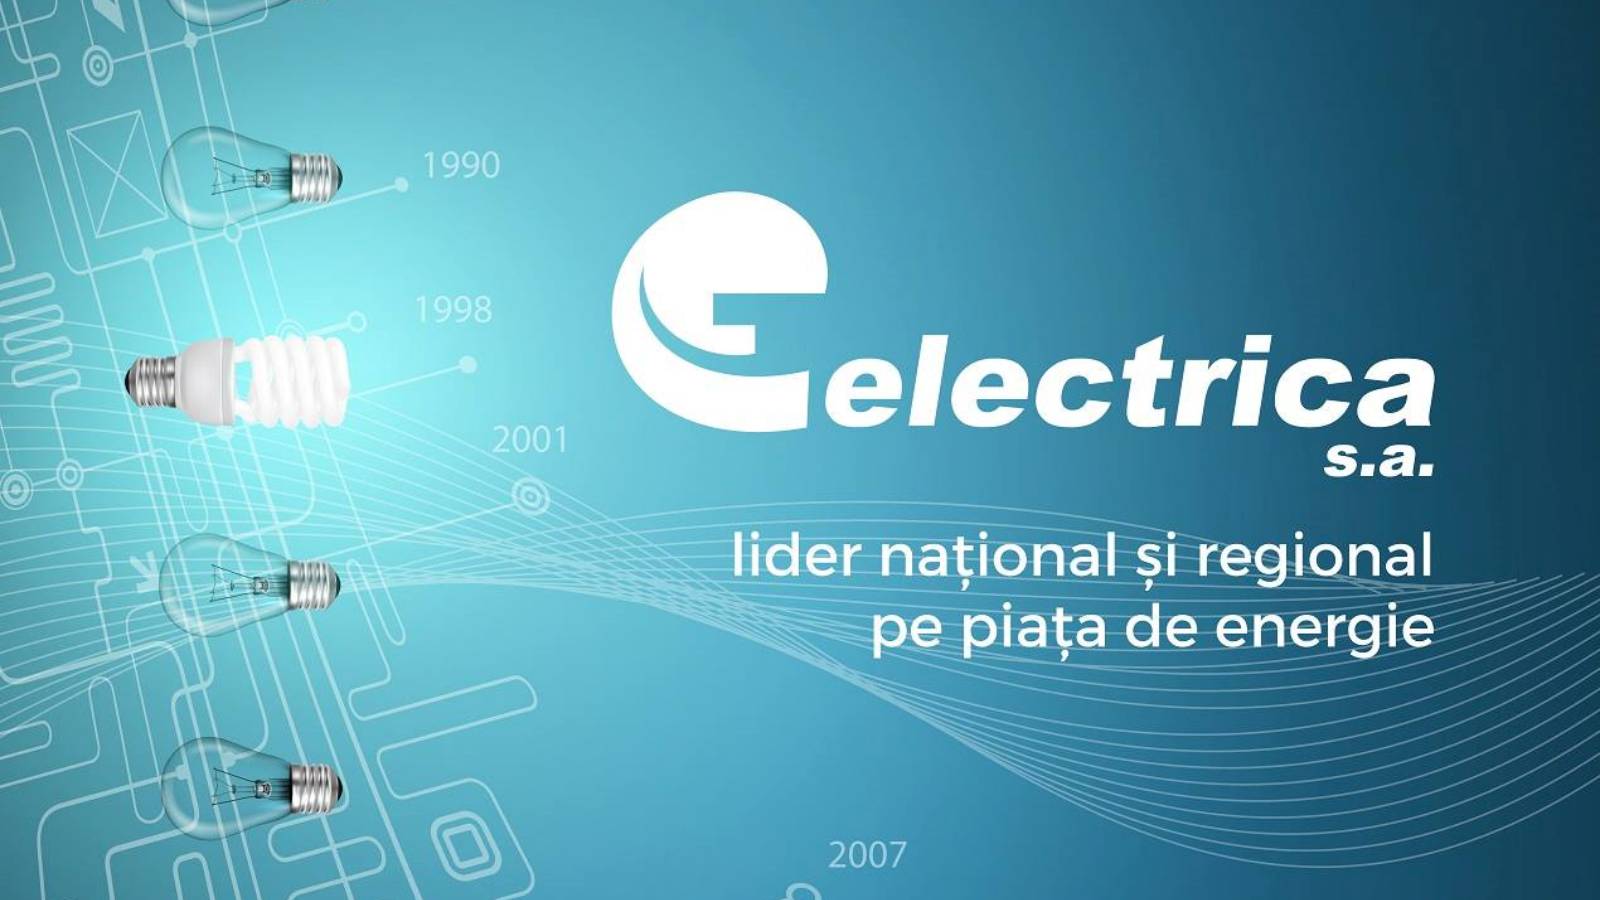 Decisión oficial de Electrica Medida IMPORTANTE dirigida a los clientes rumanos